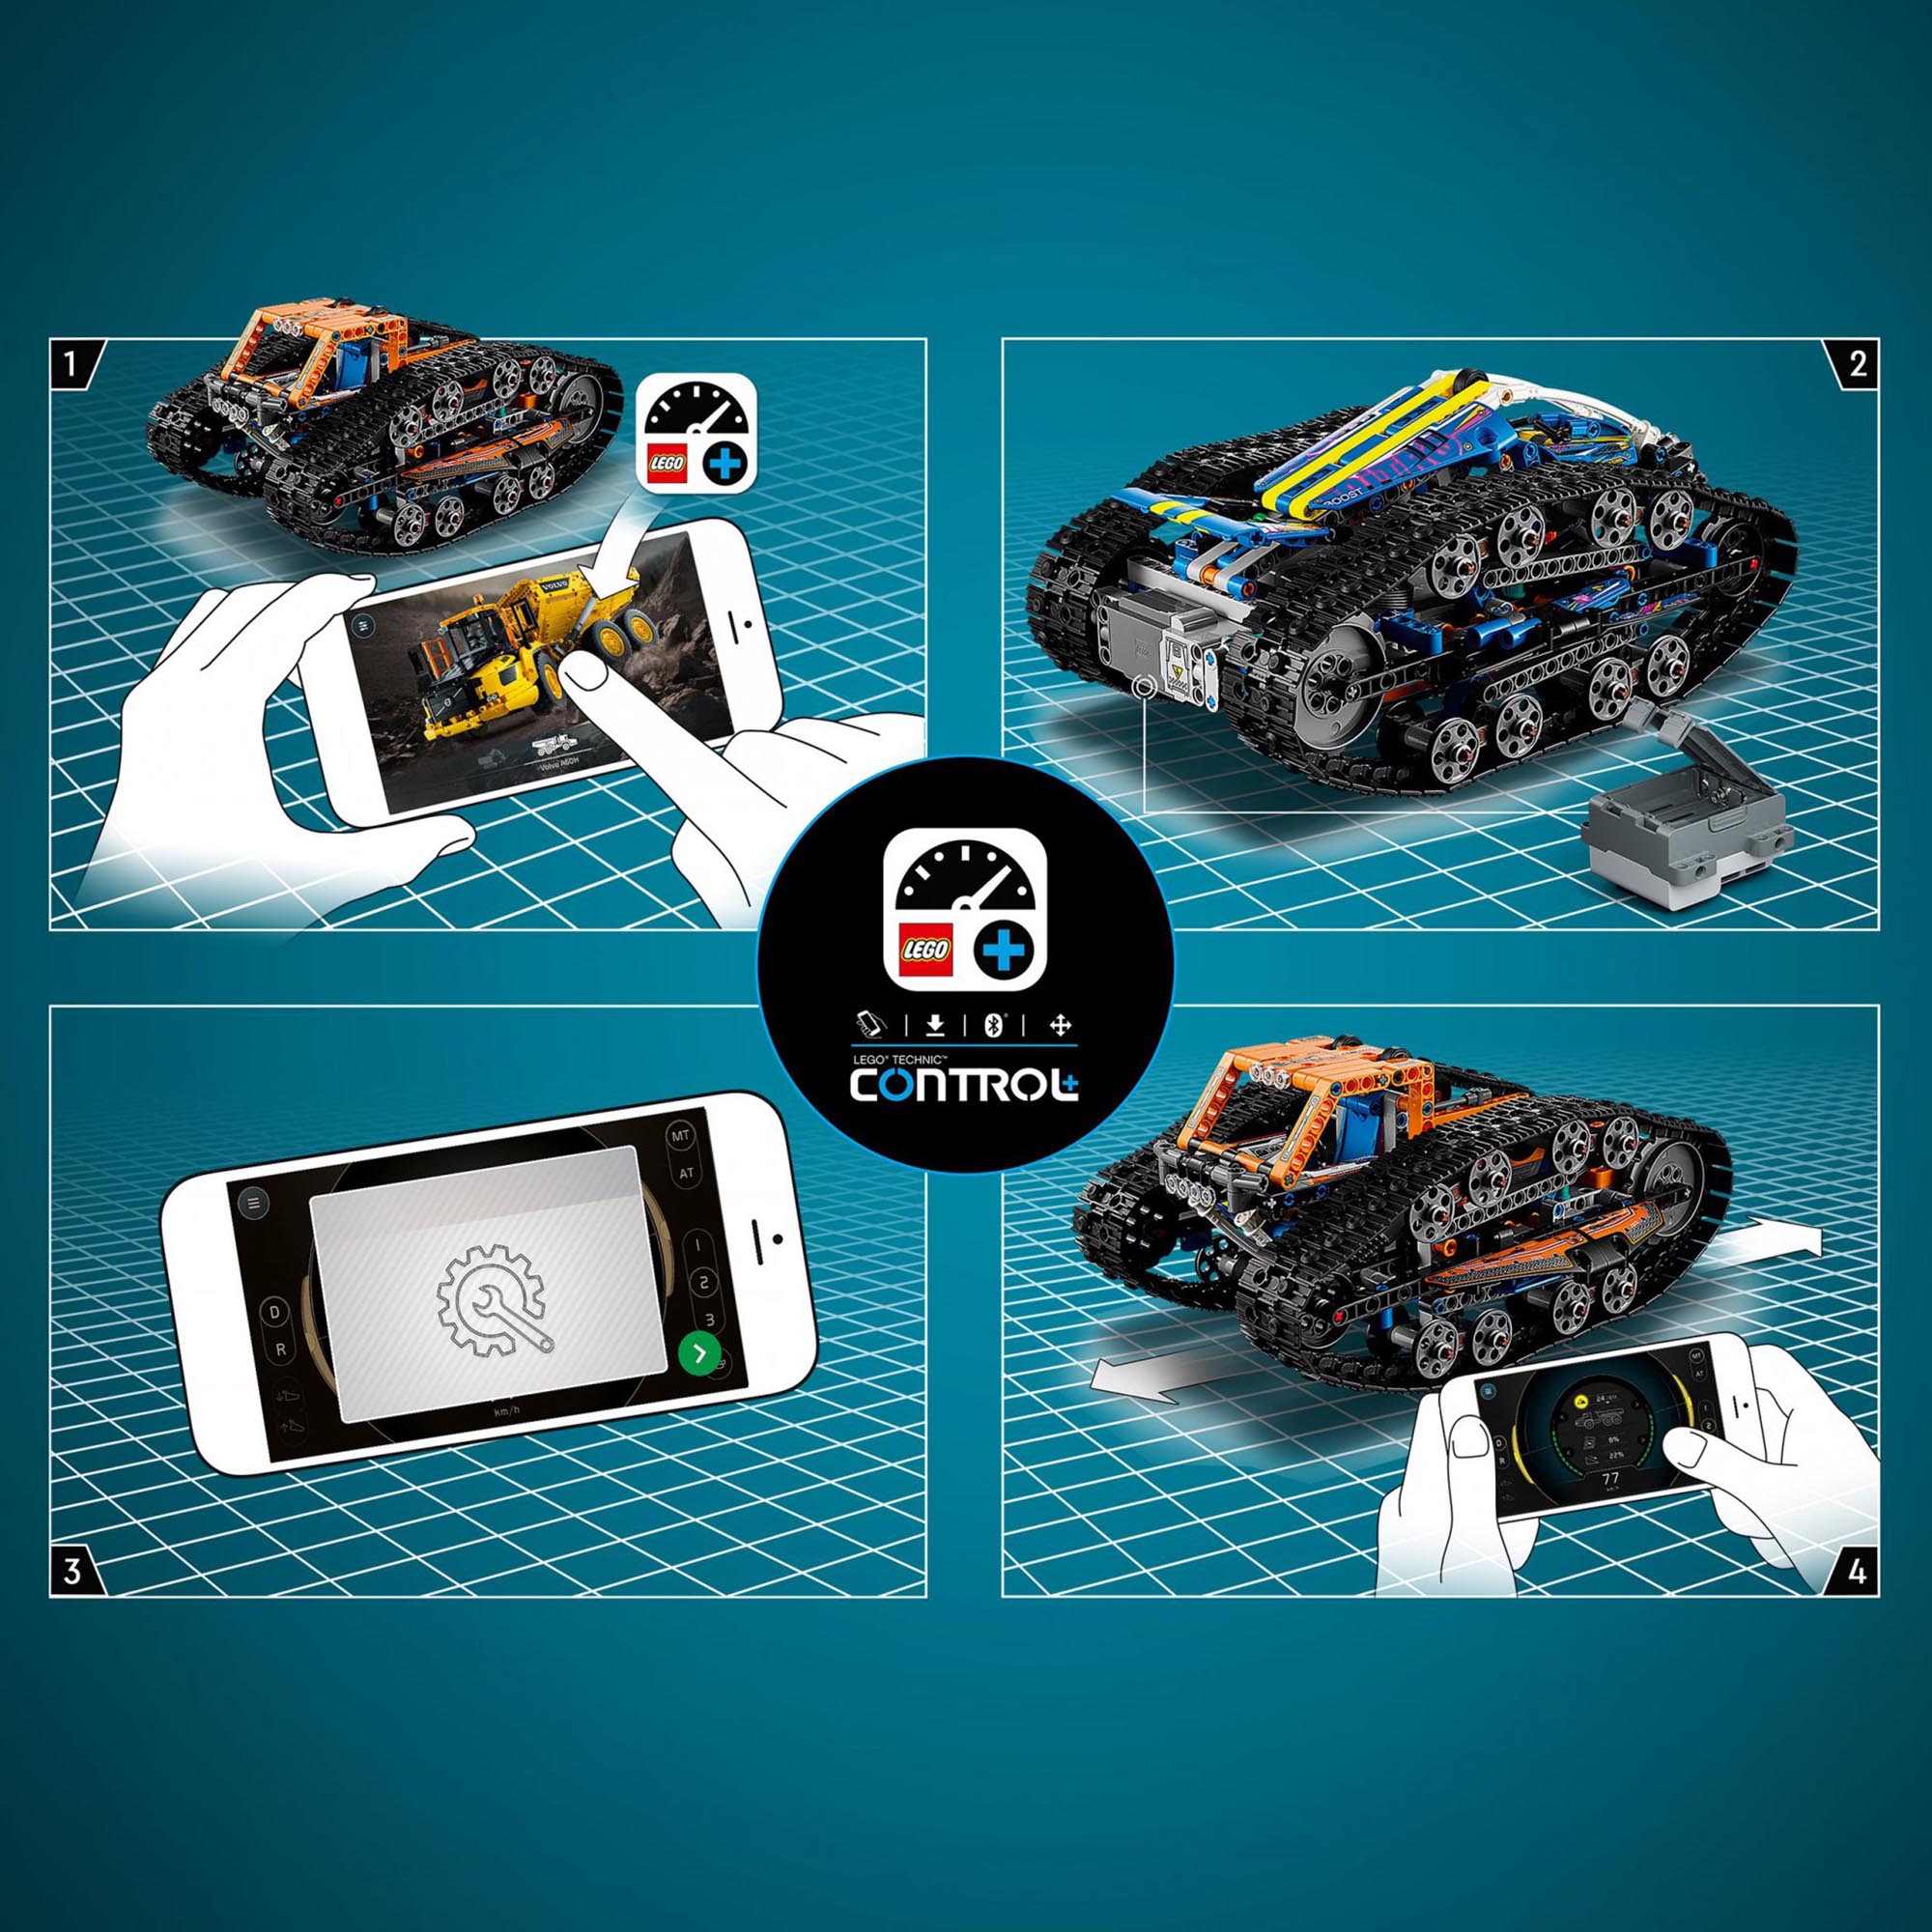 LEGO Technic Veicolo di Trasformazione Controllato da App, Macchina Fuoristrada  42140, , large